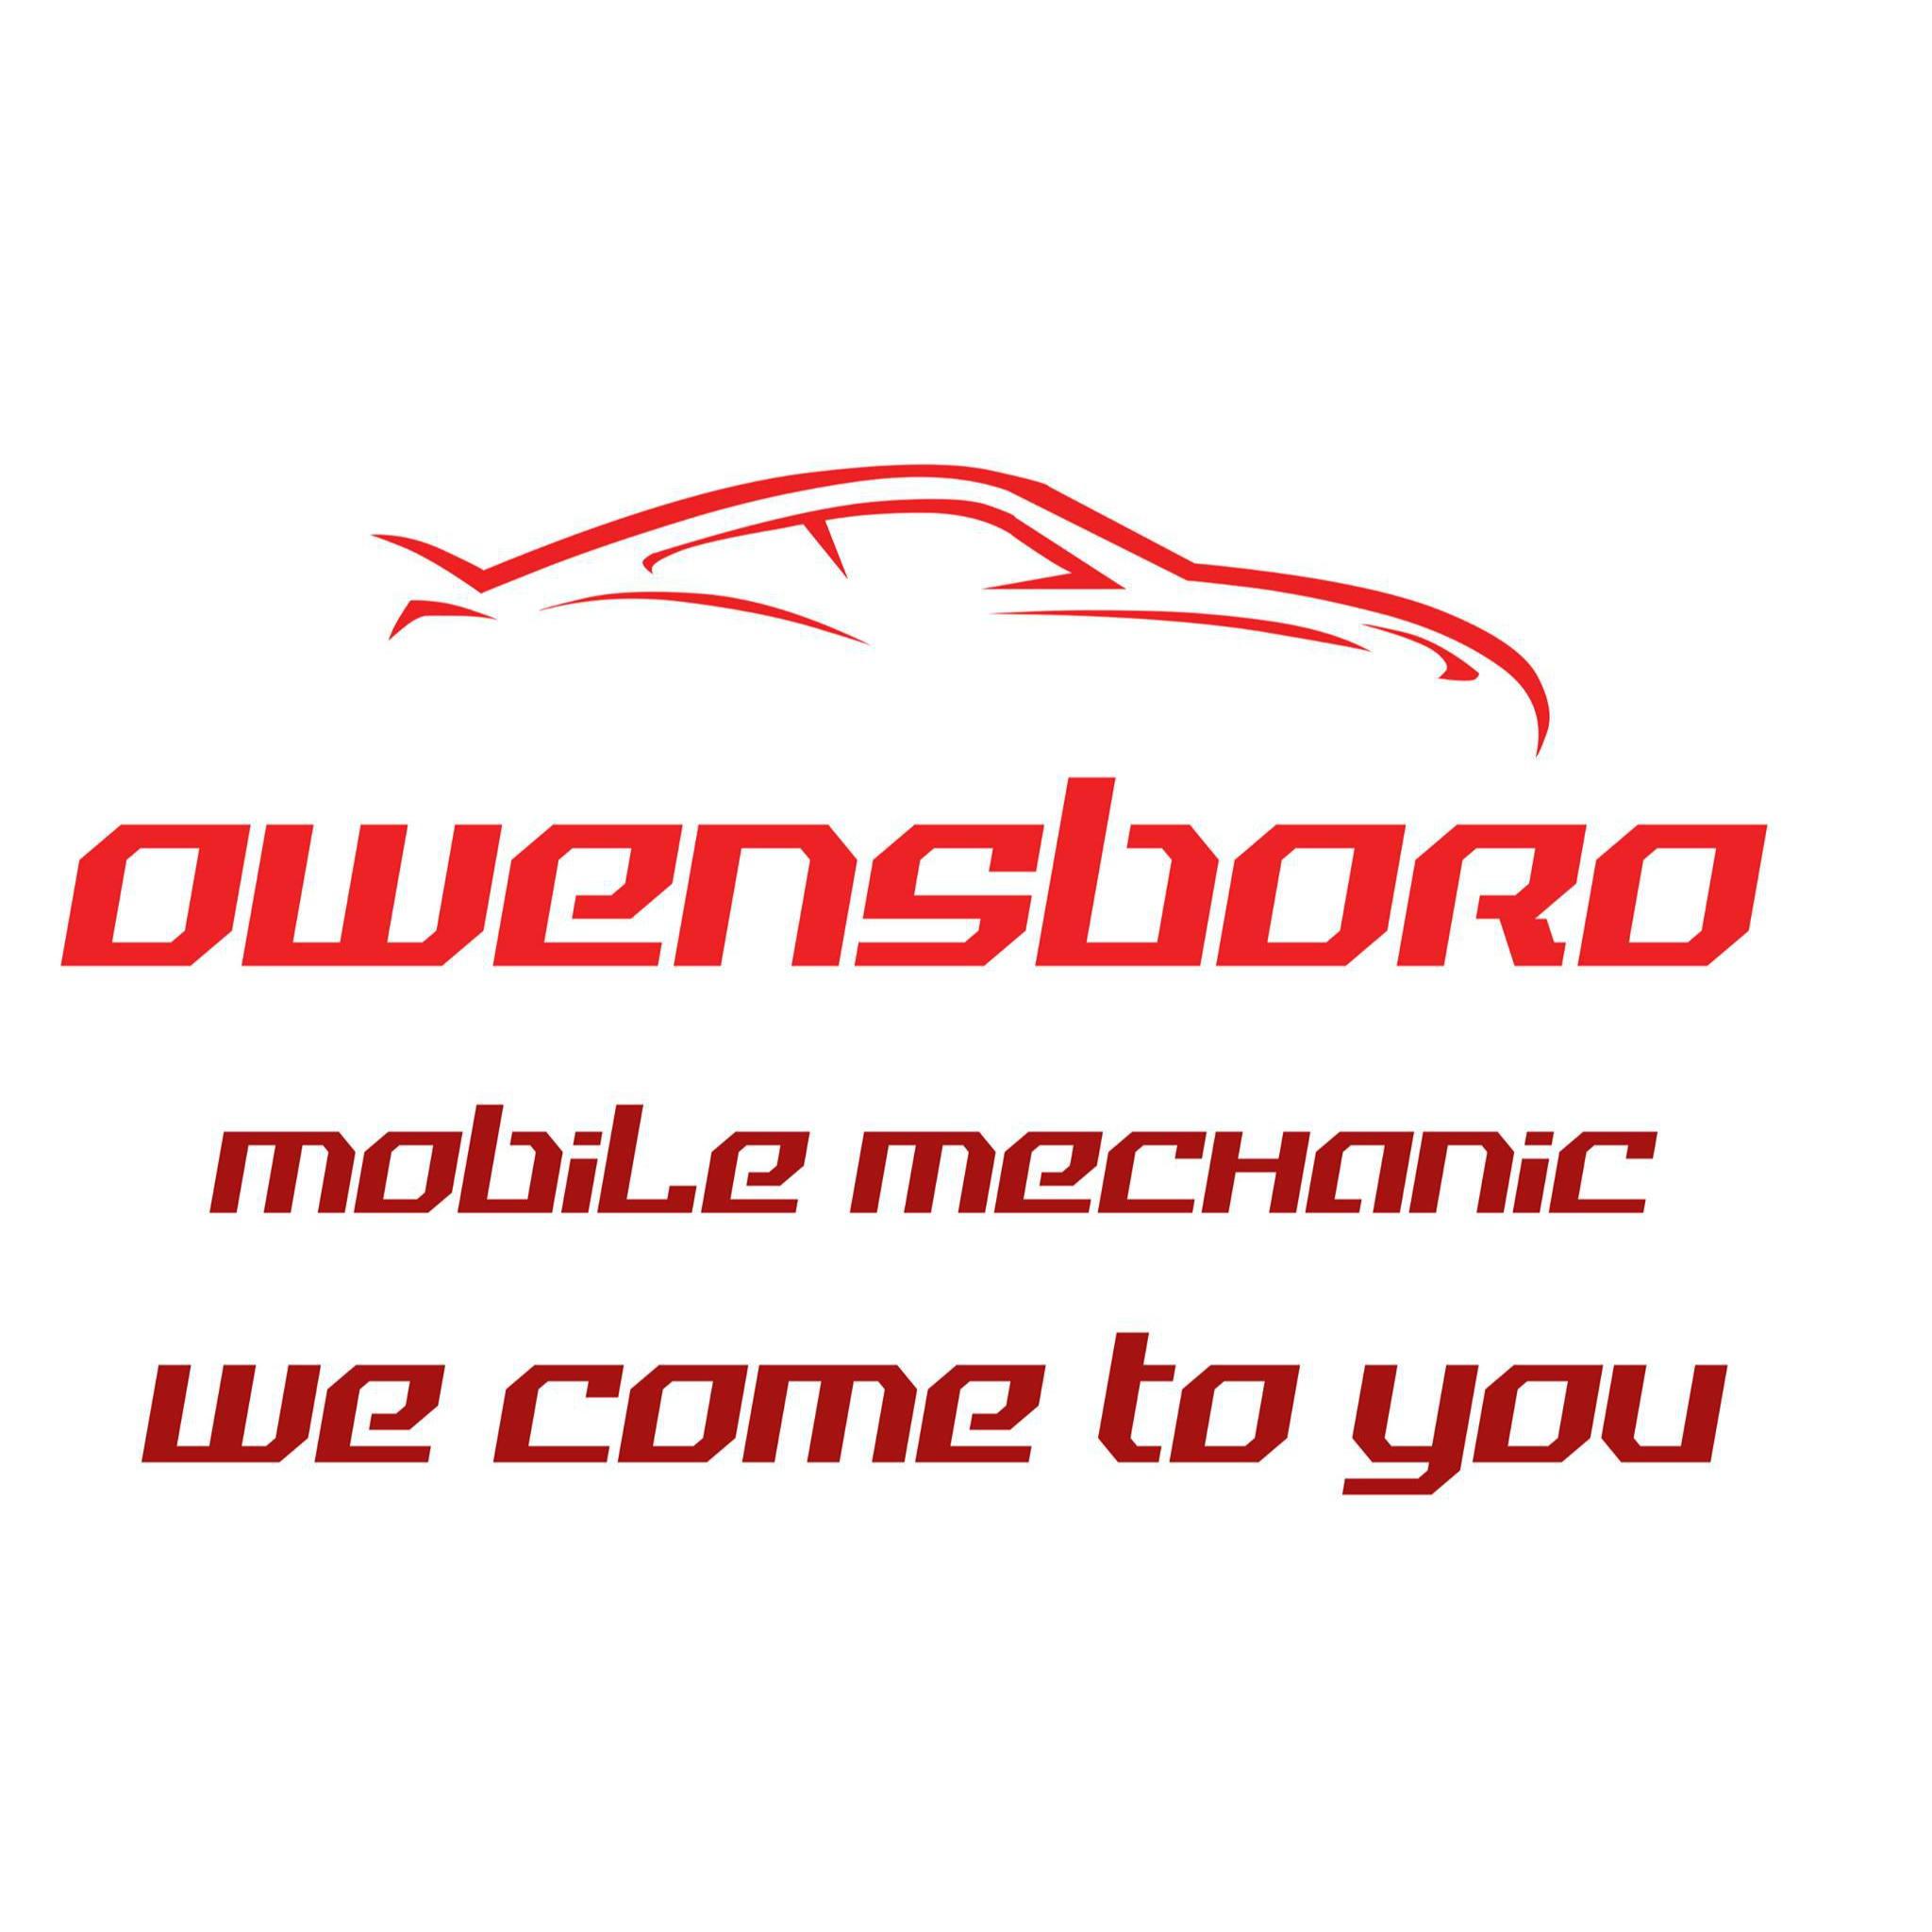 Owensboro Mobile Mechanic